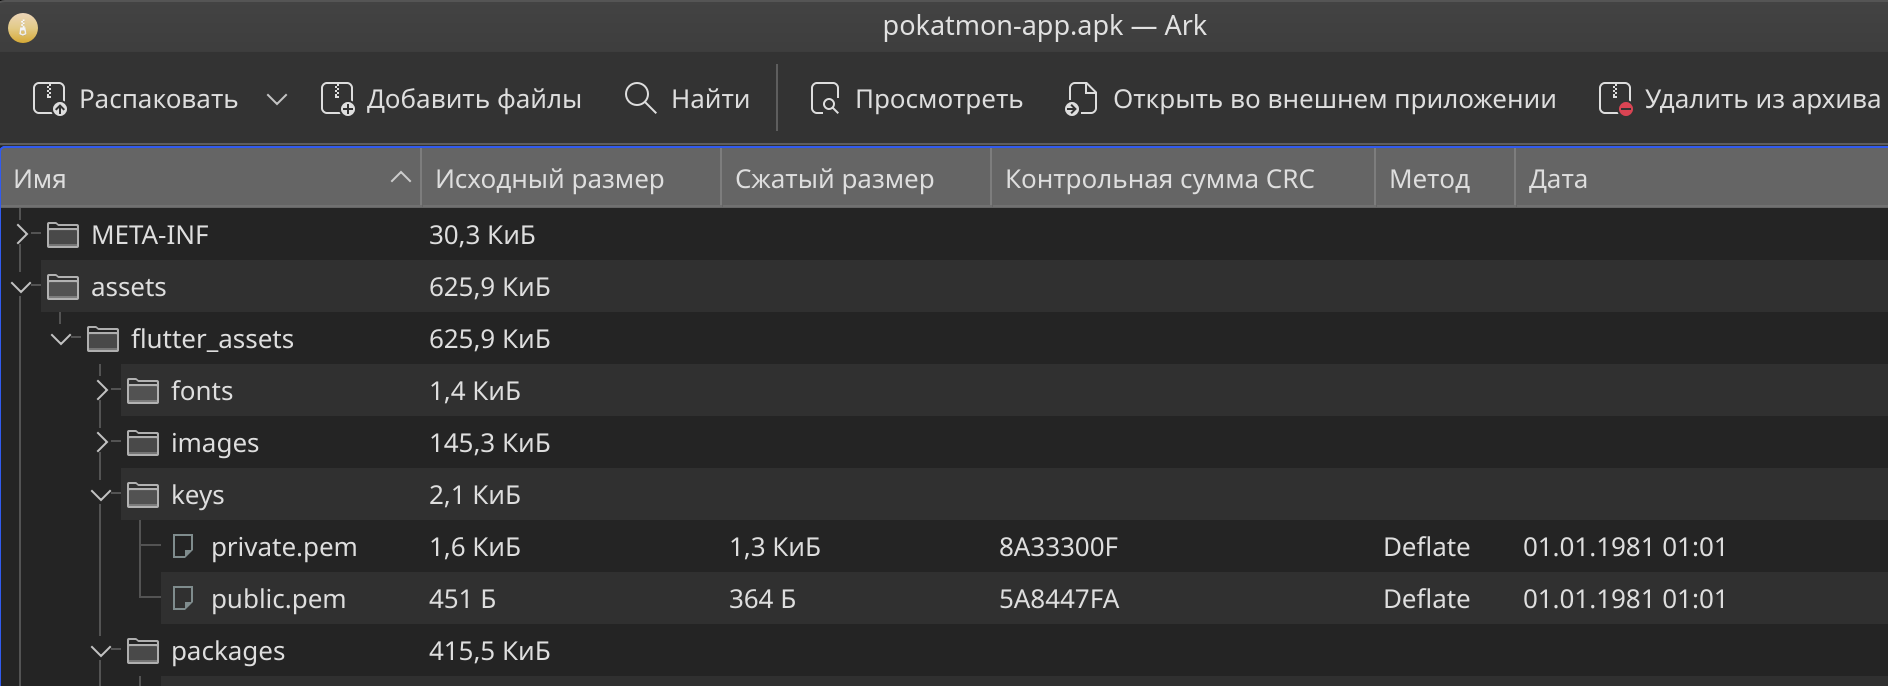 Содержимое APK-файла